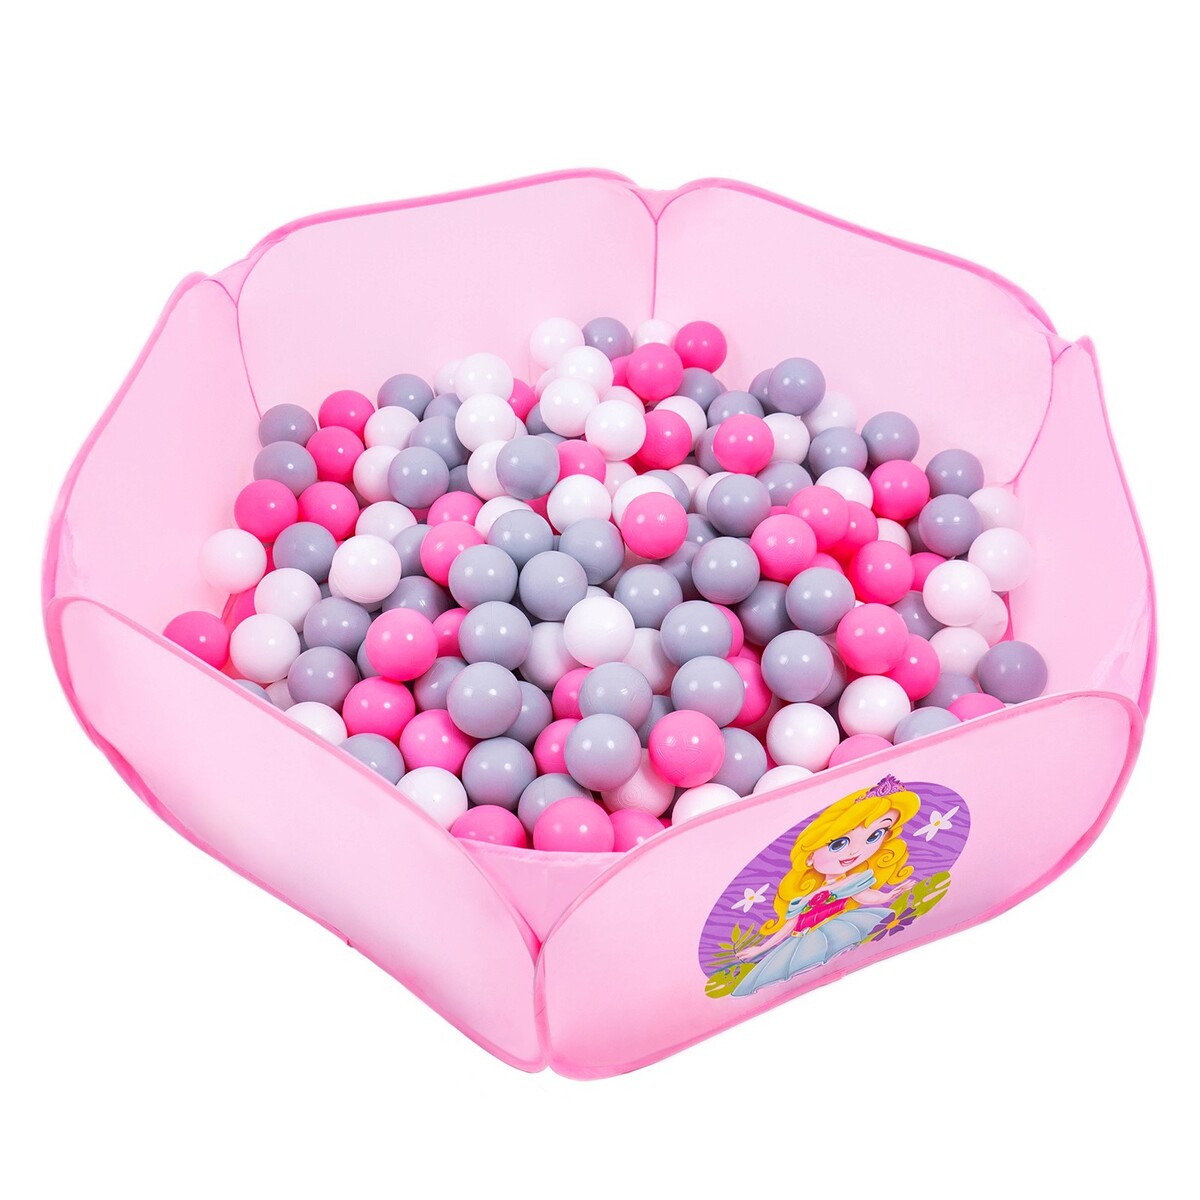 Шарики для сухого бассейна с рисунком, диаметр шара 7,5 см, набор 30 штук, цвет розовый, белый, серый шары для сухого бассейна 50шт 8см